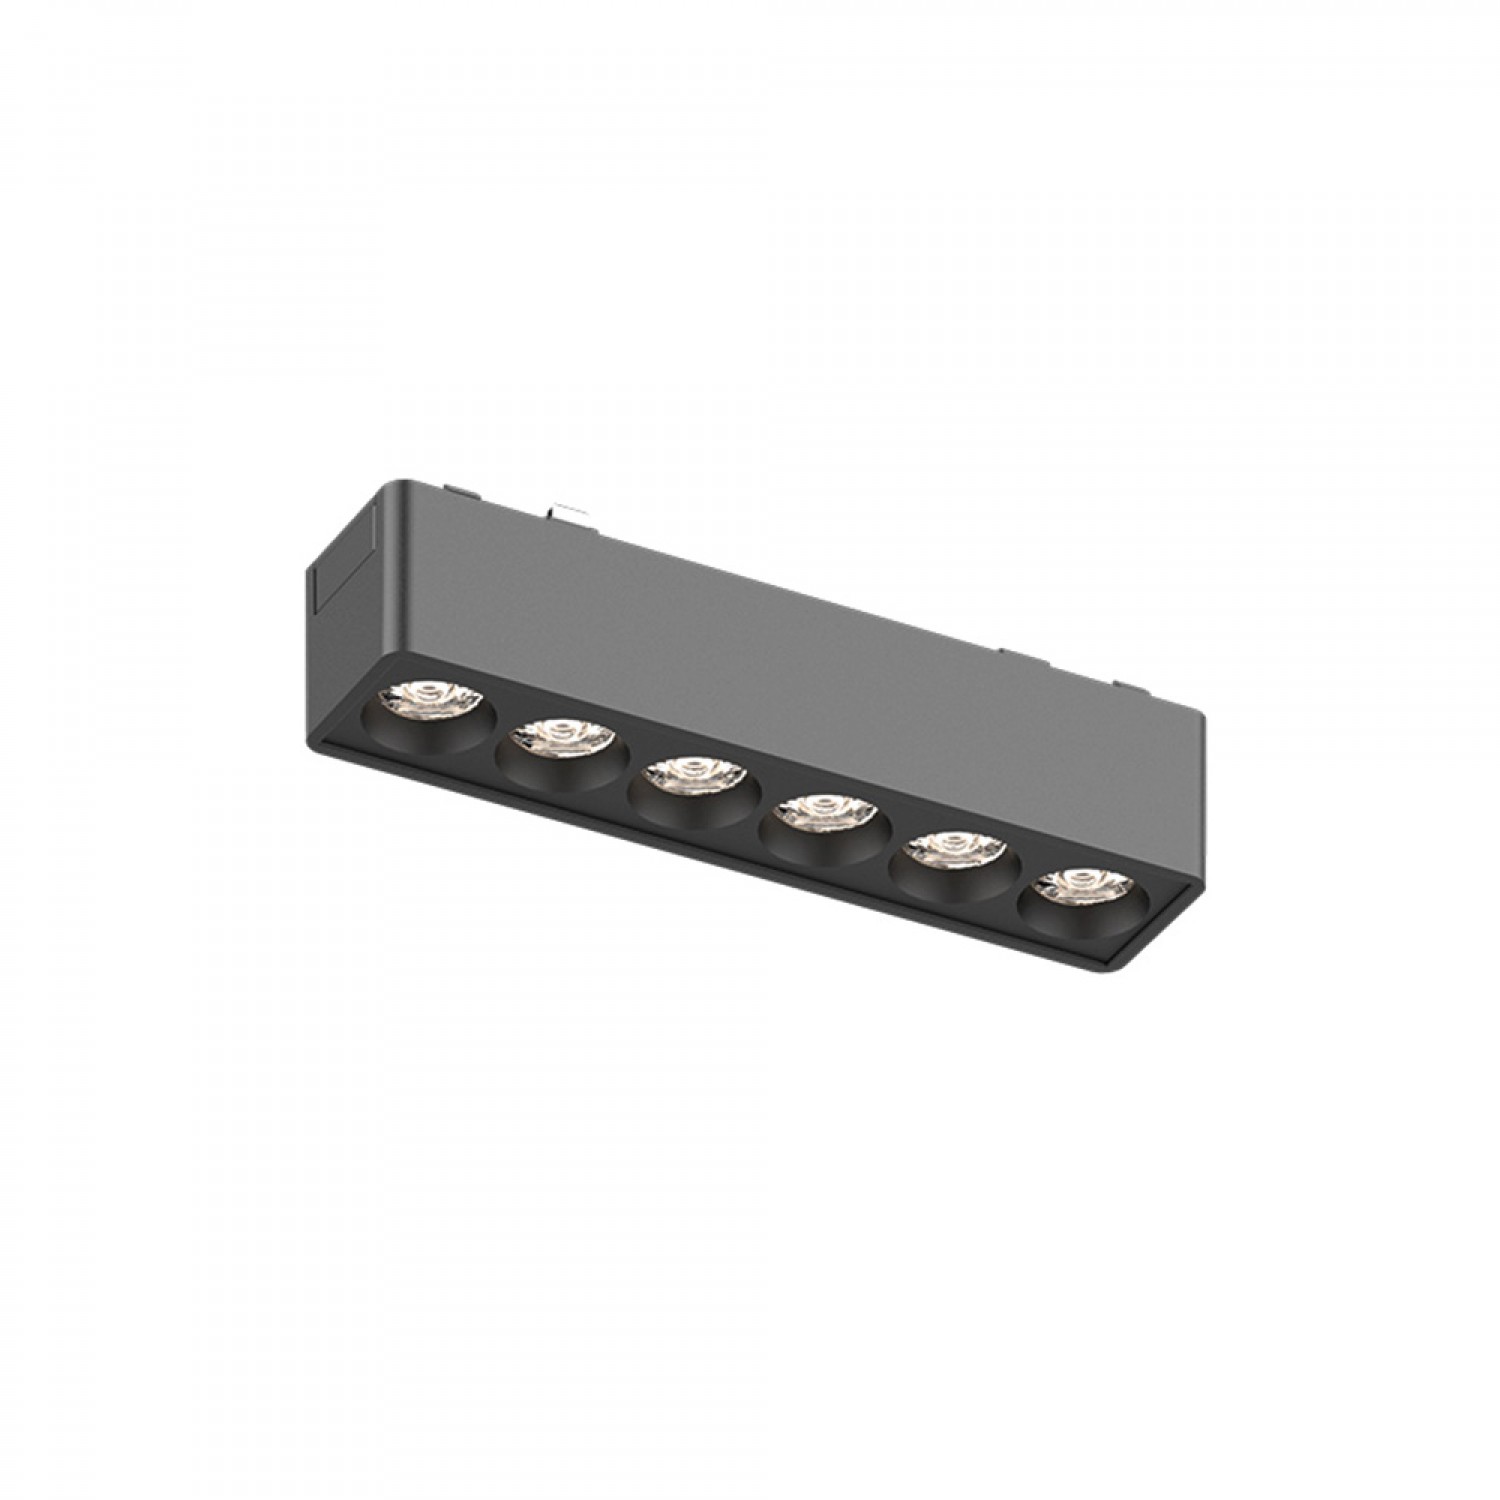 Φωτιστικό LED 6W 3000K για Ultra-Thin μαγνητική ράγα σε μαύρη απόχρωση D:12,2cmX2,4cm (T02801-BL)